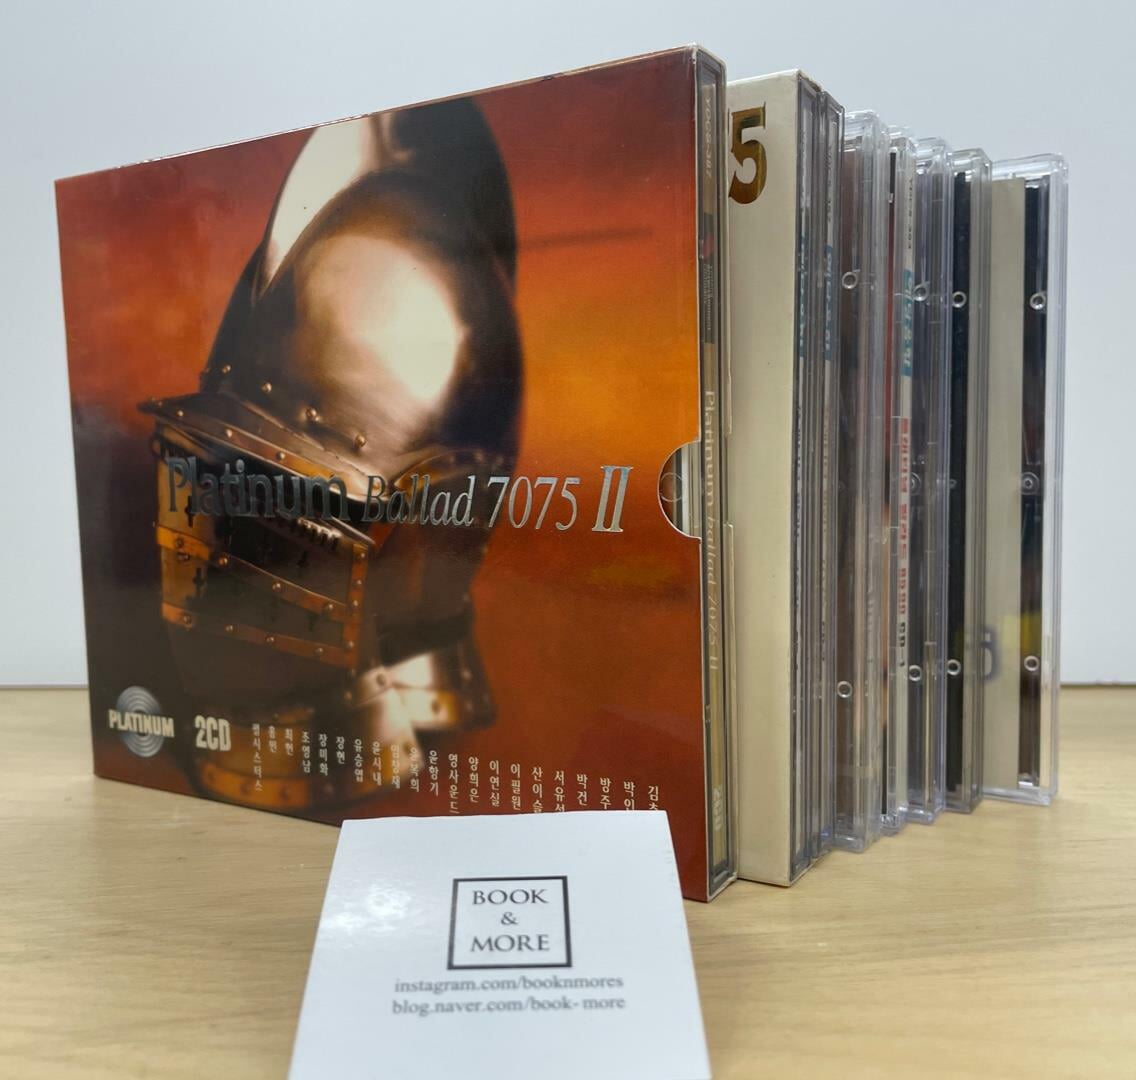 (CD)플래티넘 발라드 7075 ~ 9095 8CD 세트 / 예당 / 상태 : 최상 (설명과 사진 참고)